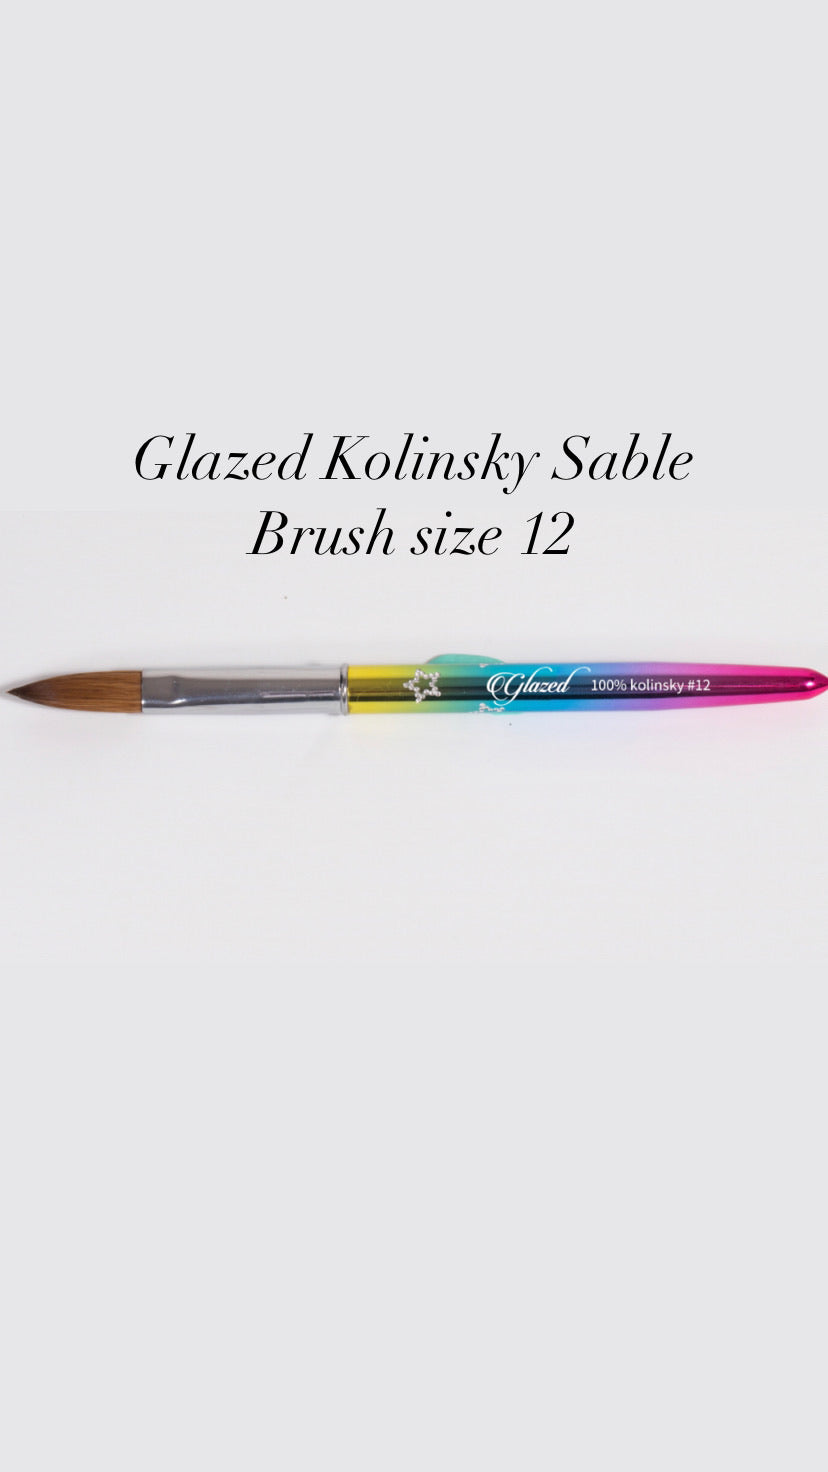 Glazed Acrylic Pure Kolinsky Sable Brush Size 12